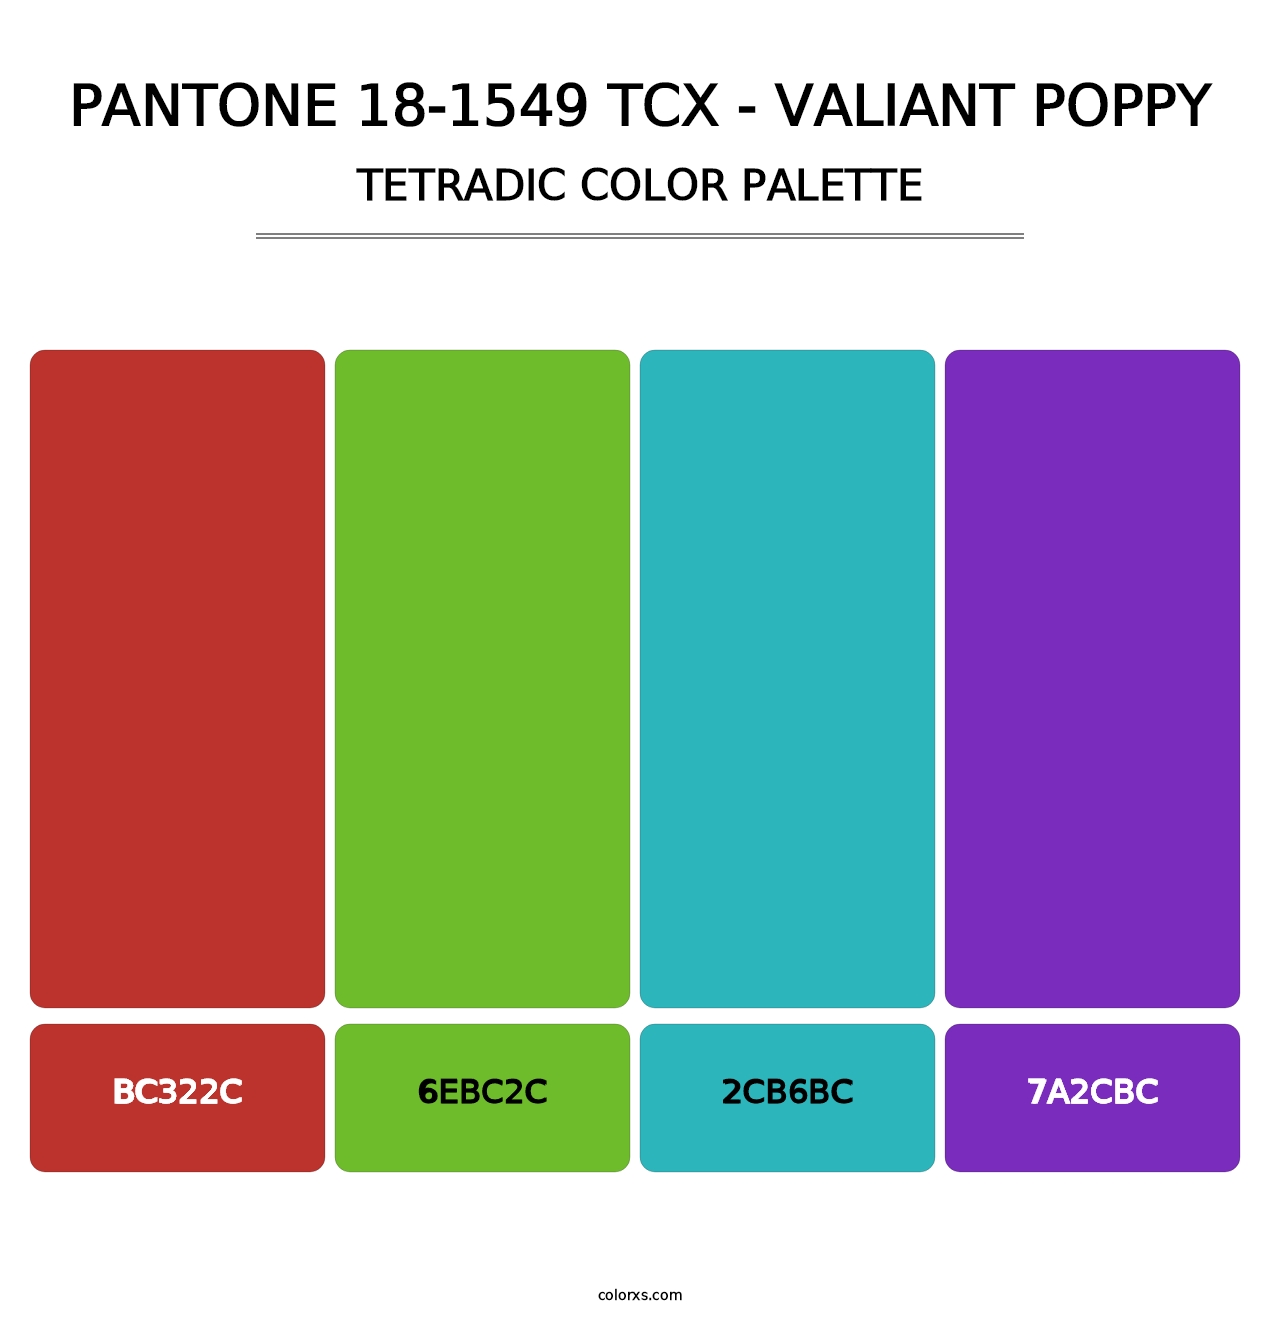 PANTONE 18-1549 TCX - Valiant Poppy - Tetradic Color Palette